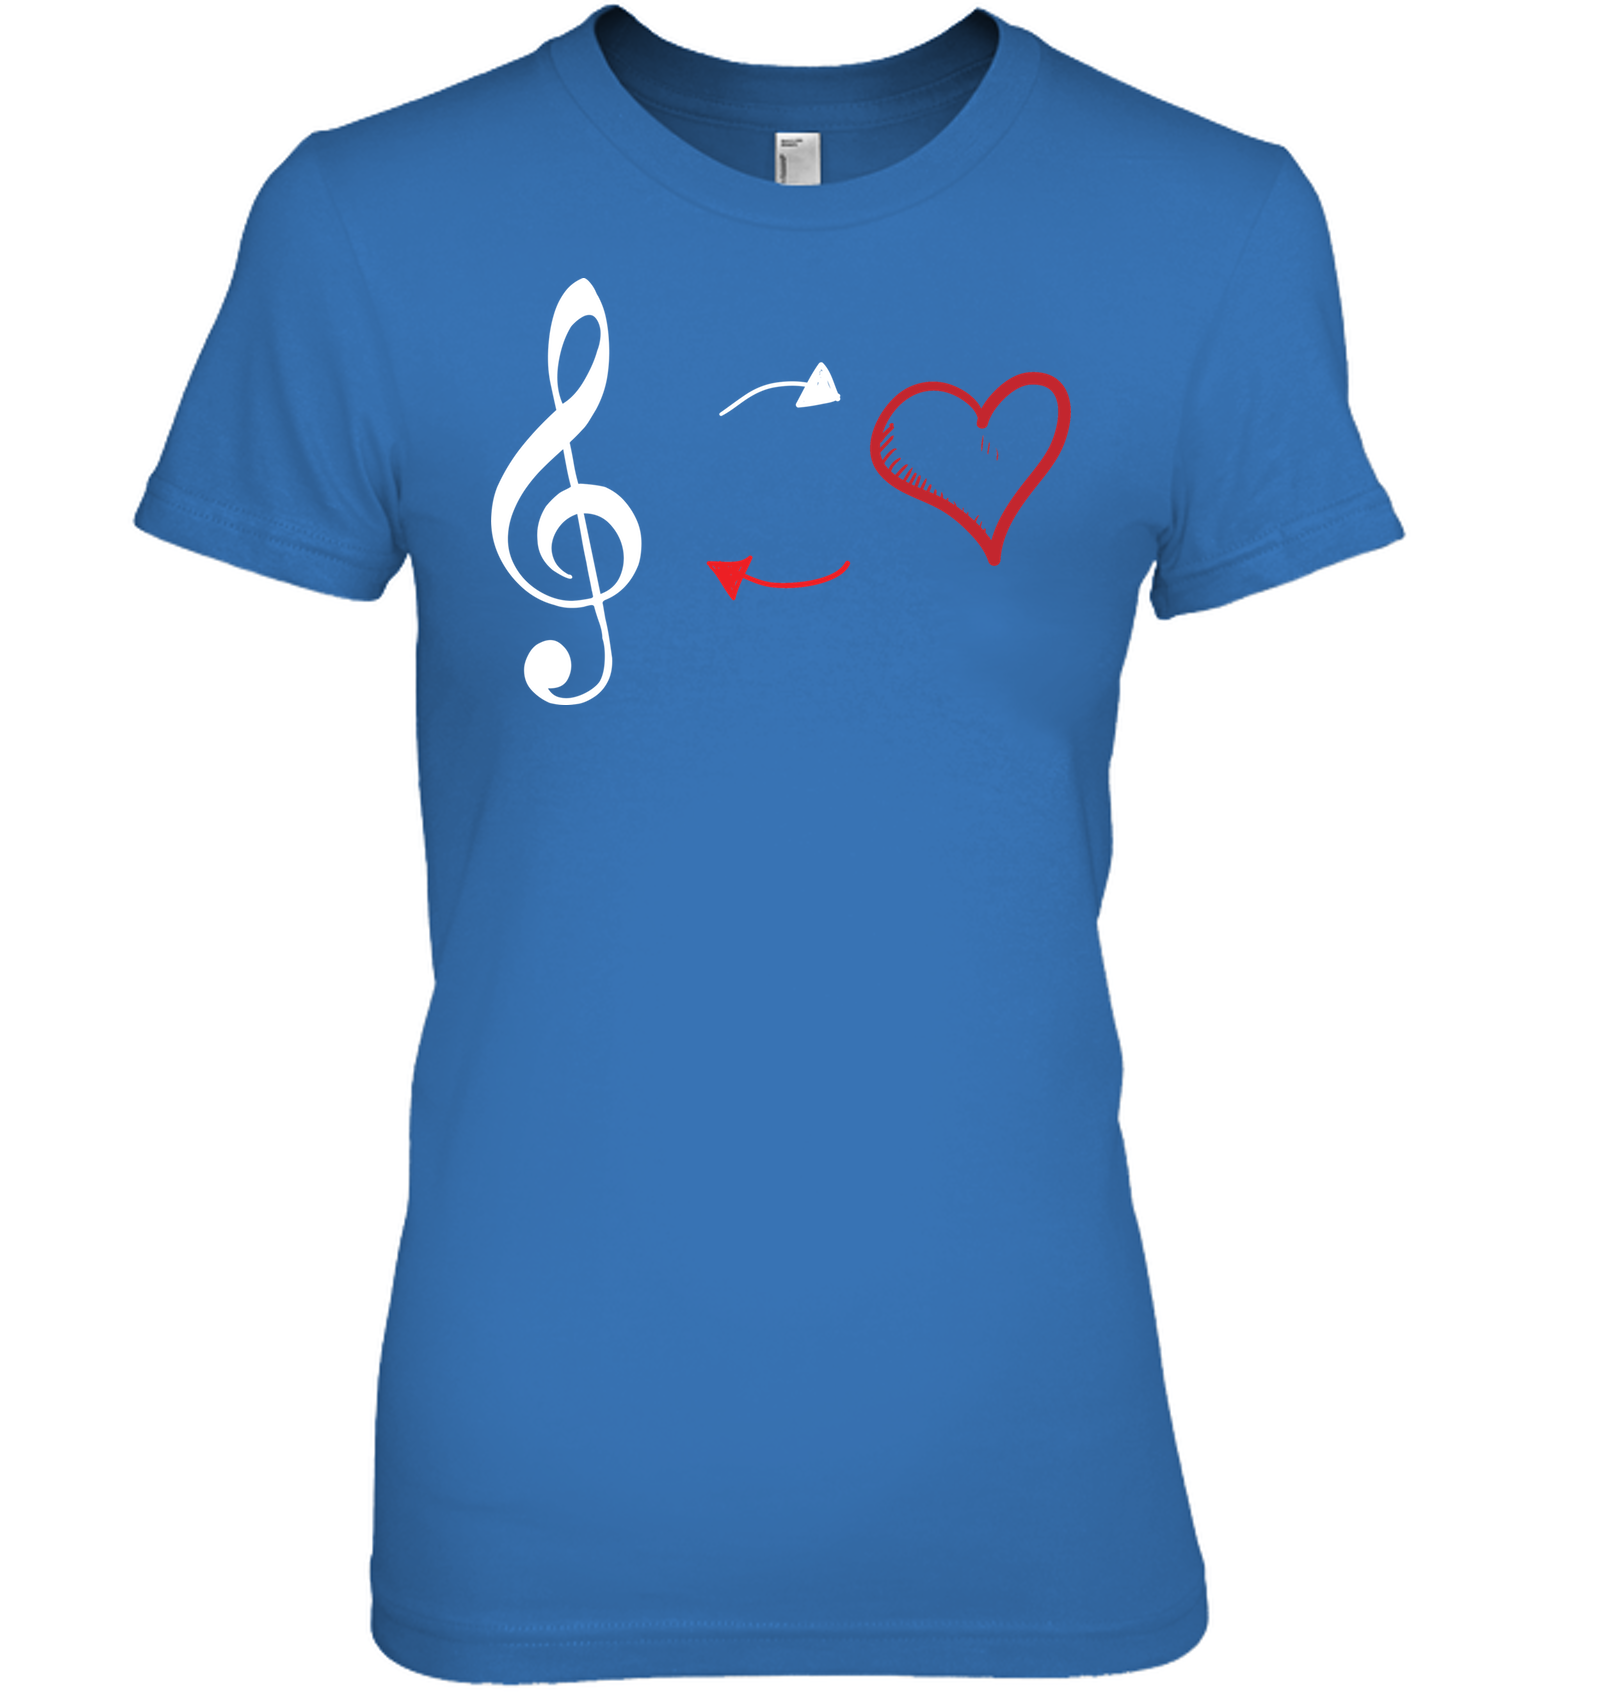 Treble Heart Duo - Hanes Women's Nano-T® T-shirt